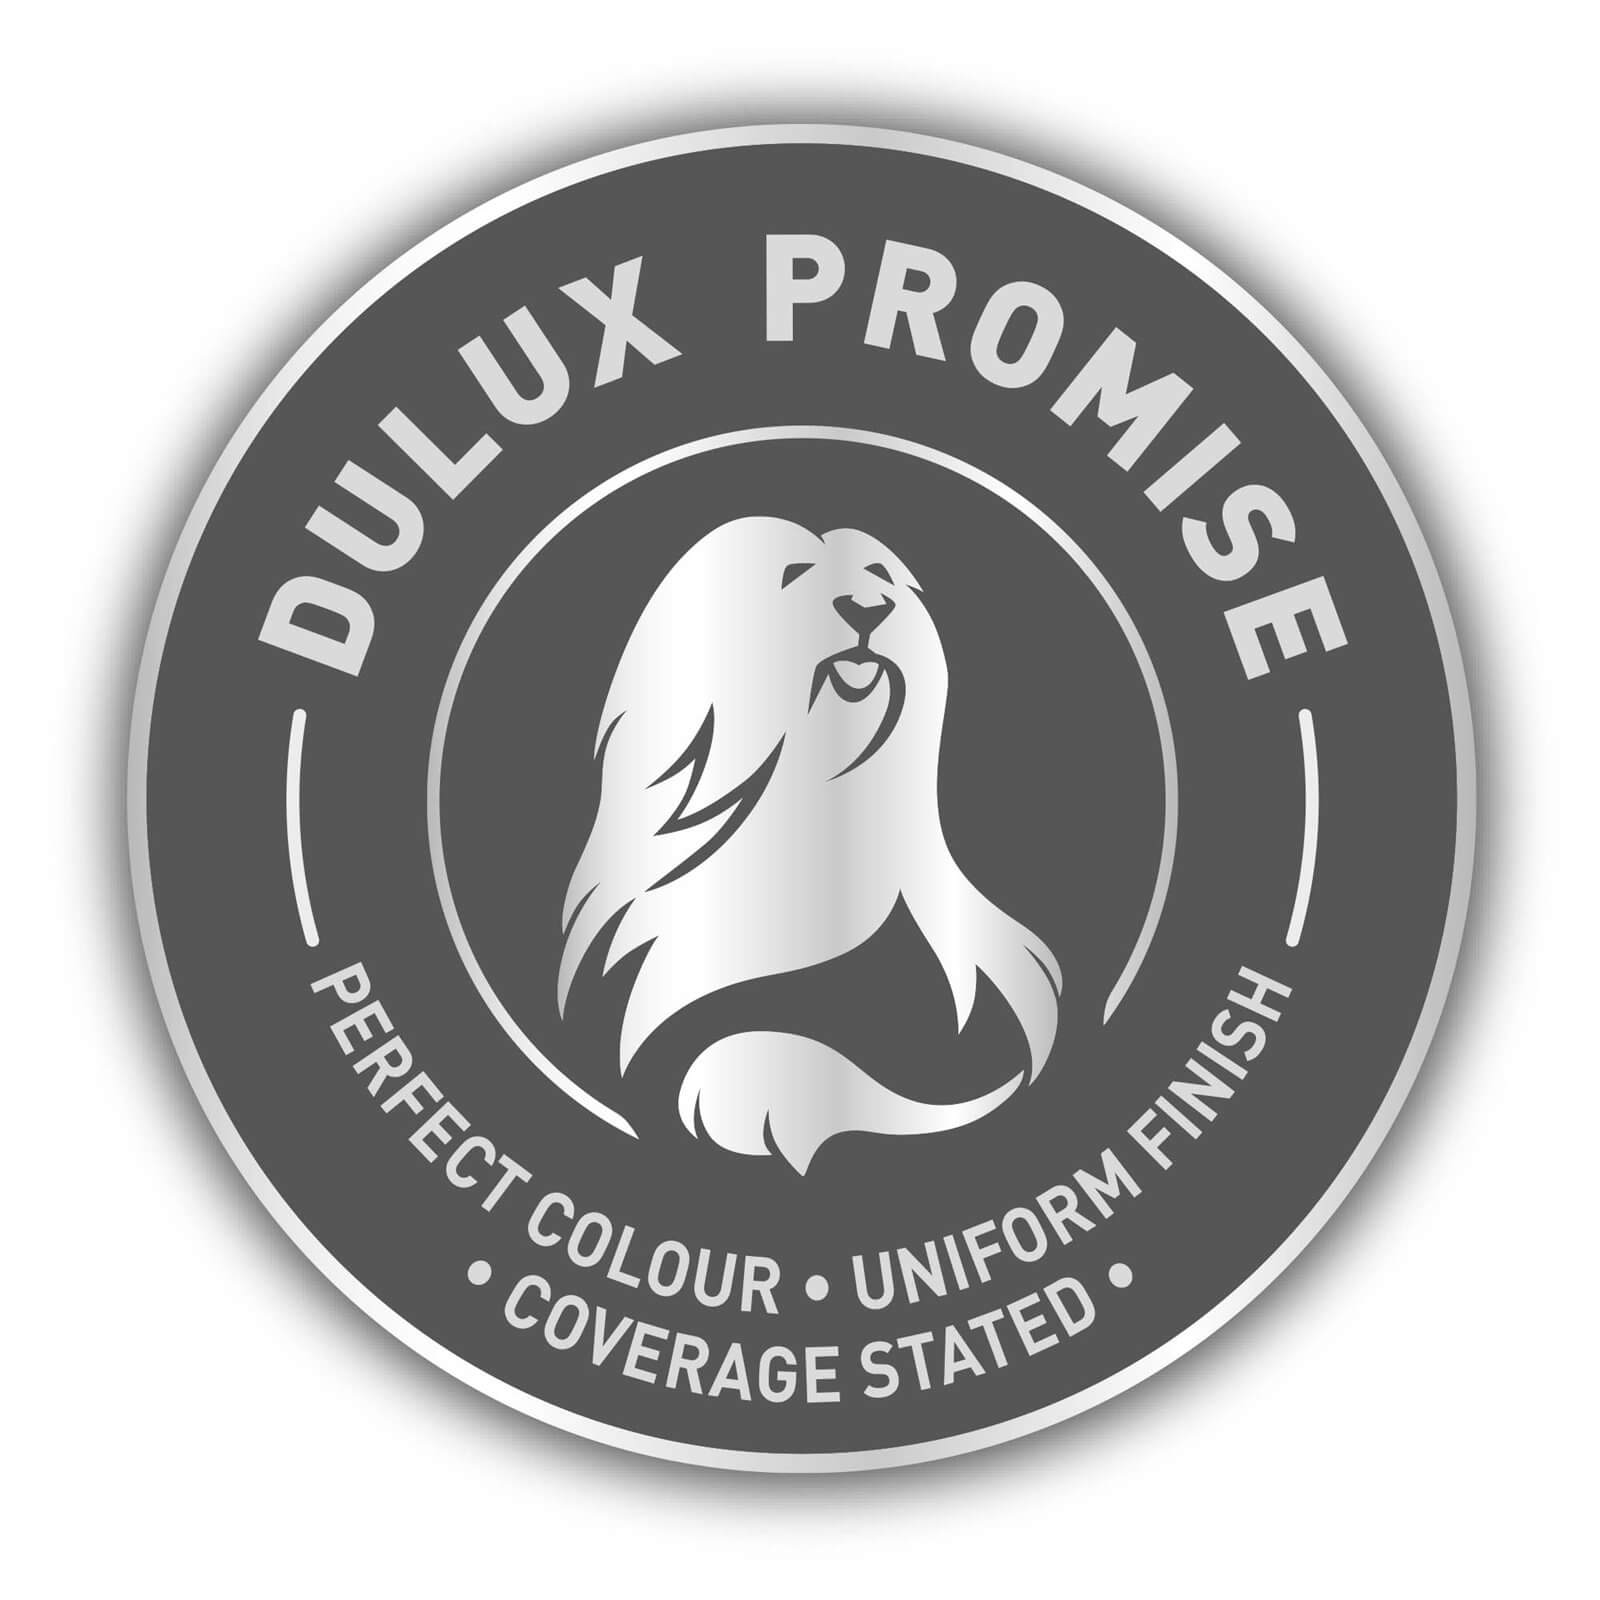 Dulux Easycare Washable & Tough Matt Paint Warm Pewter - 5L